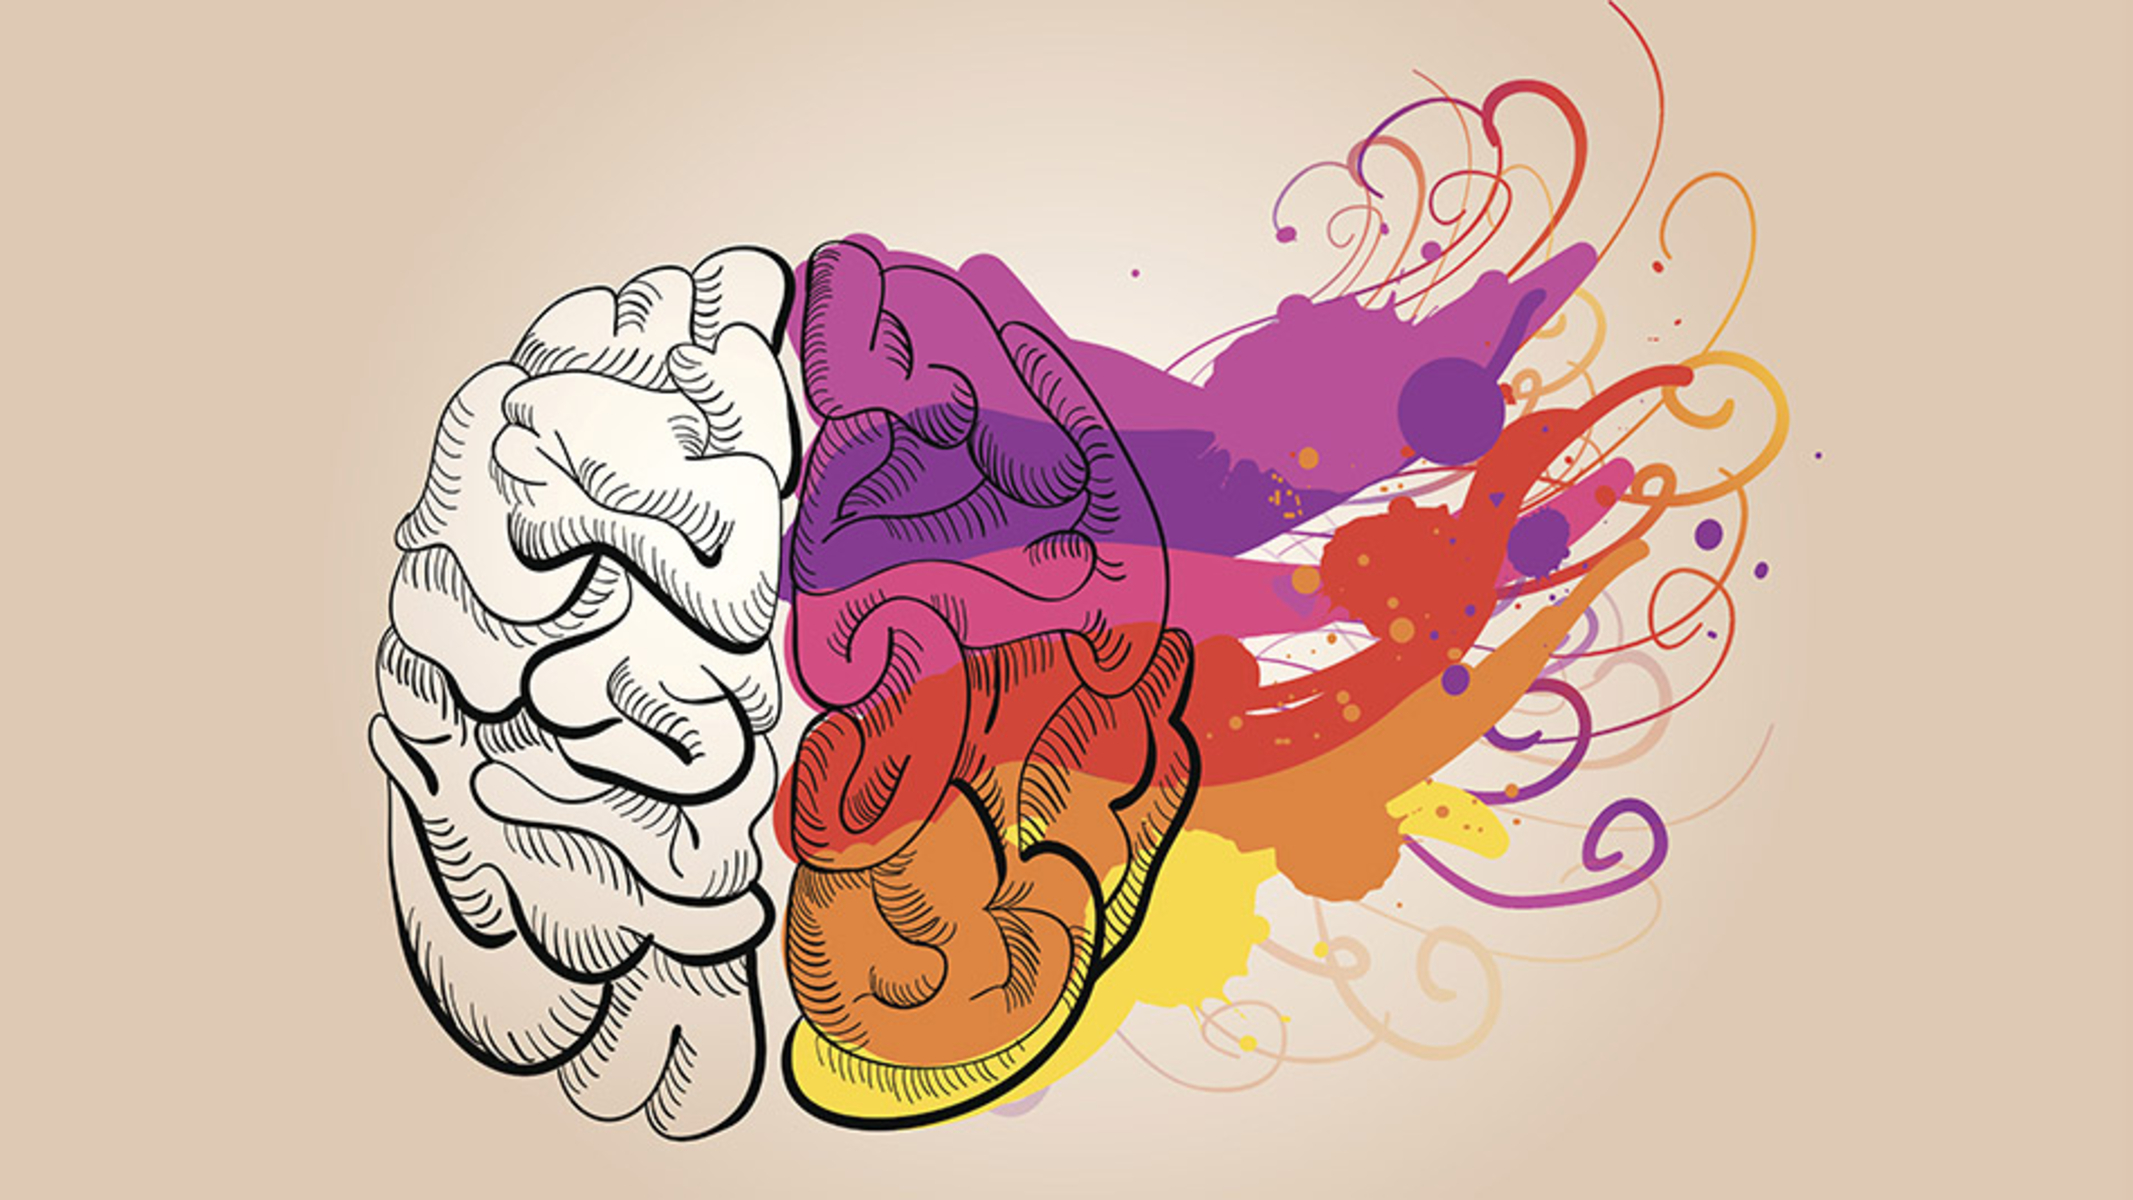 Εγκέφαλος ήχος: Τι συμβαίνει στο κεφάλι σου όταν ακούς αγαπημένη μουσική